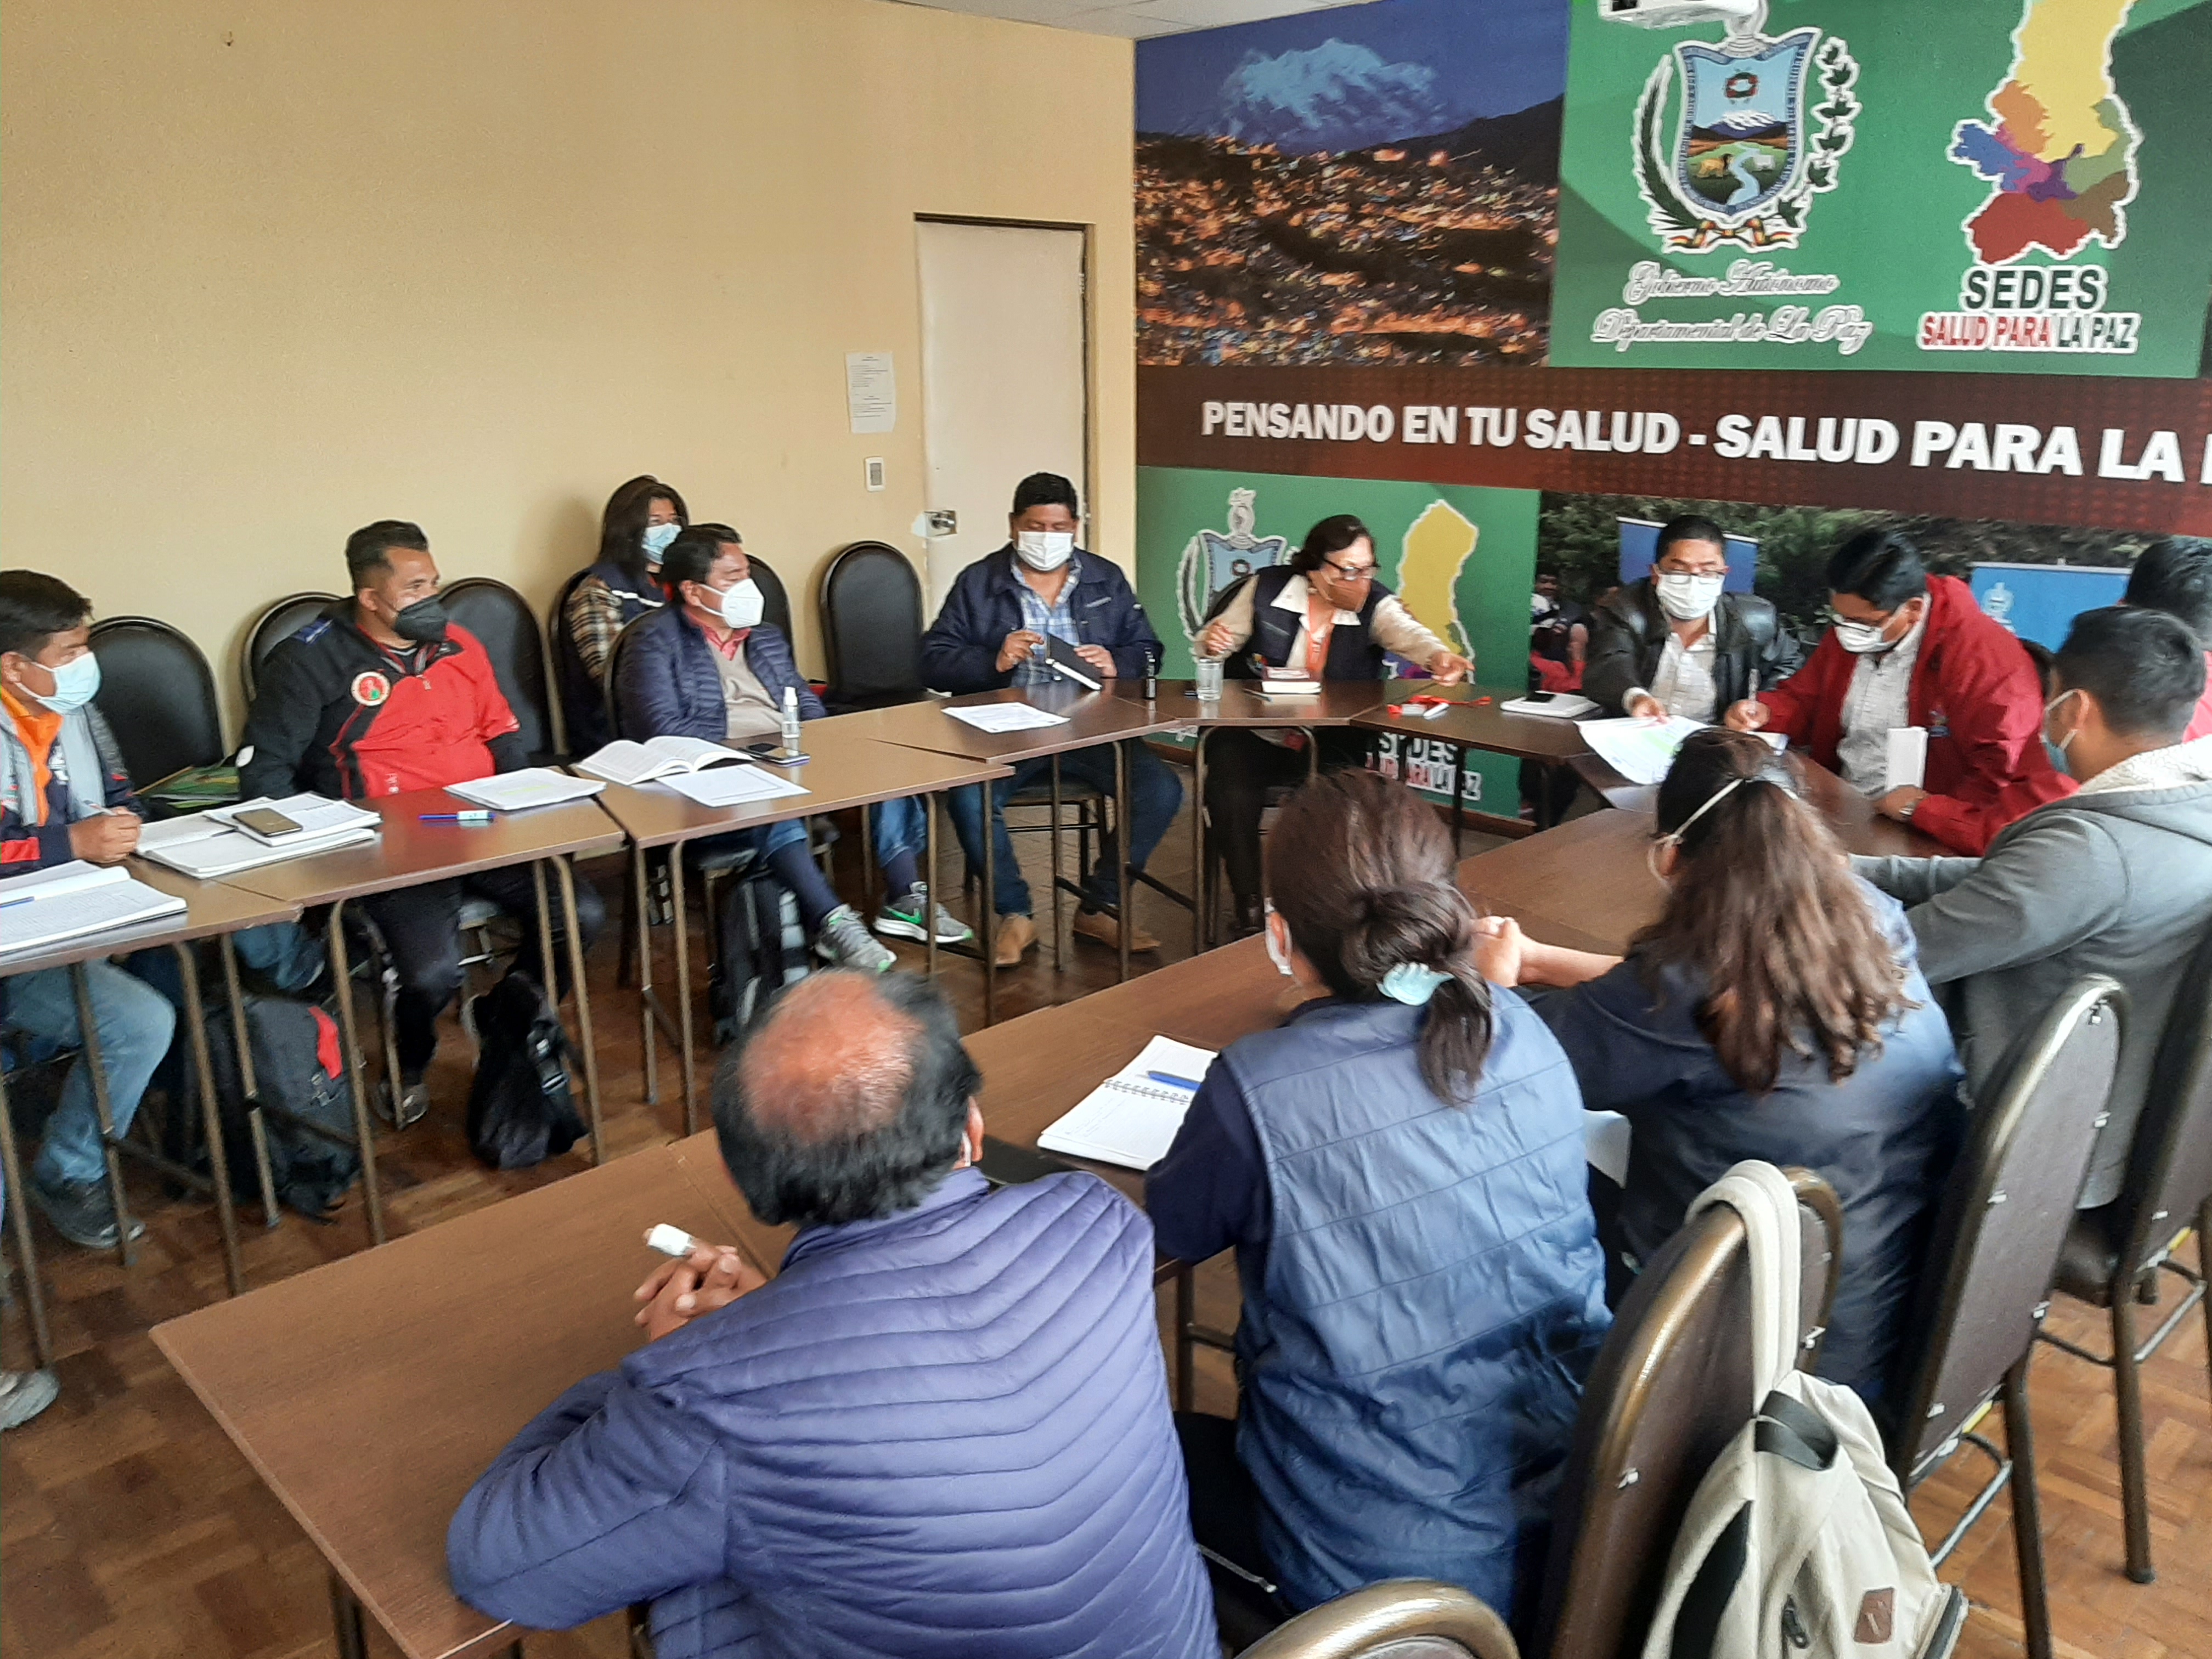 Defensoría del Pueblo posibilita acuerdo que permite levantar las medidas de presión asumidas por trabajadores del SEDES La Paz